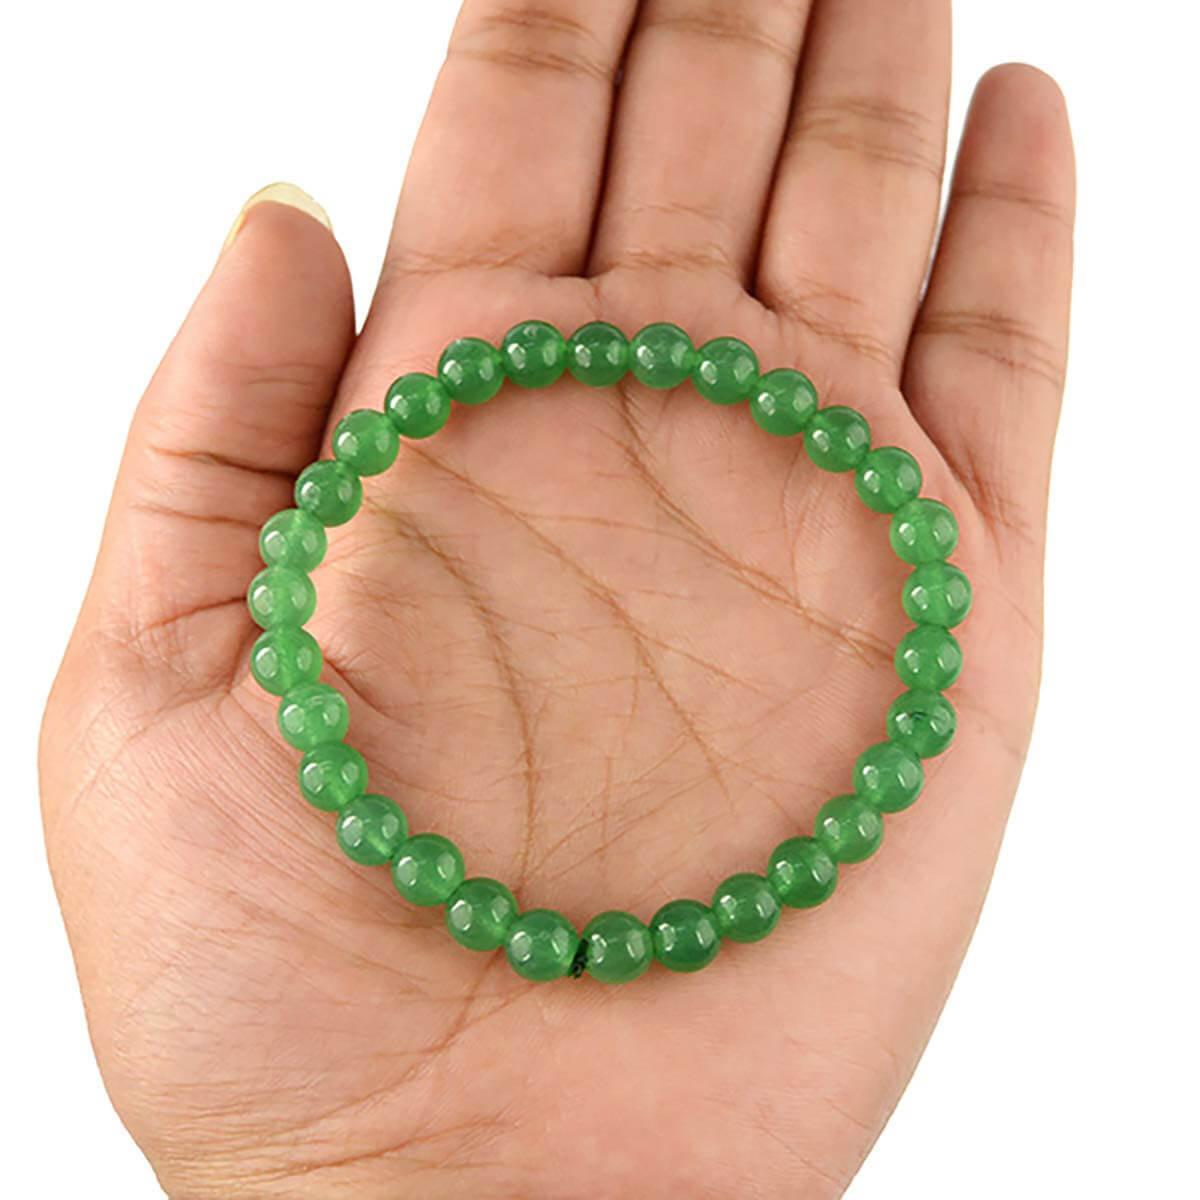 Green Aventurine Crystal Bracelet for Reiki Healing 6 MM